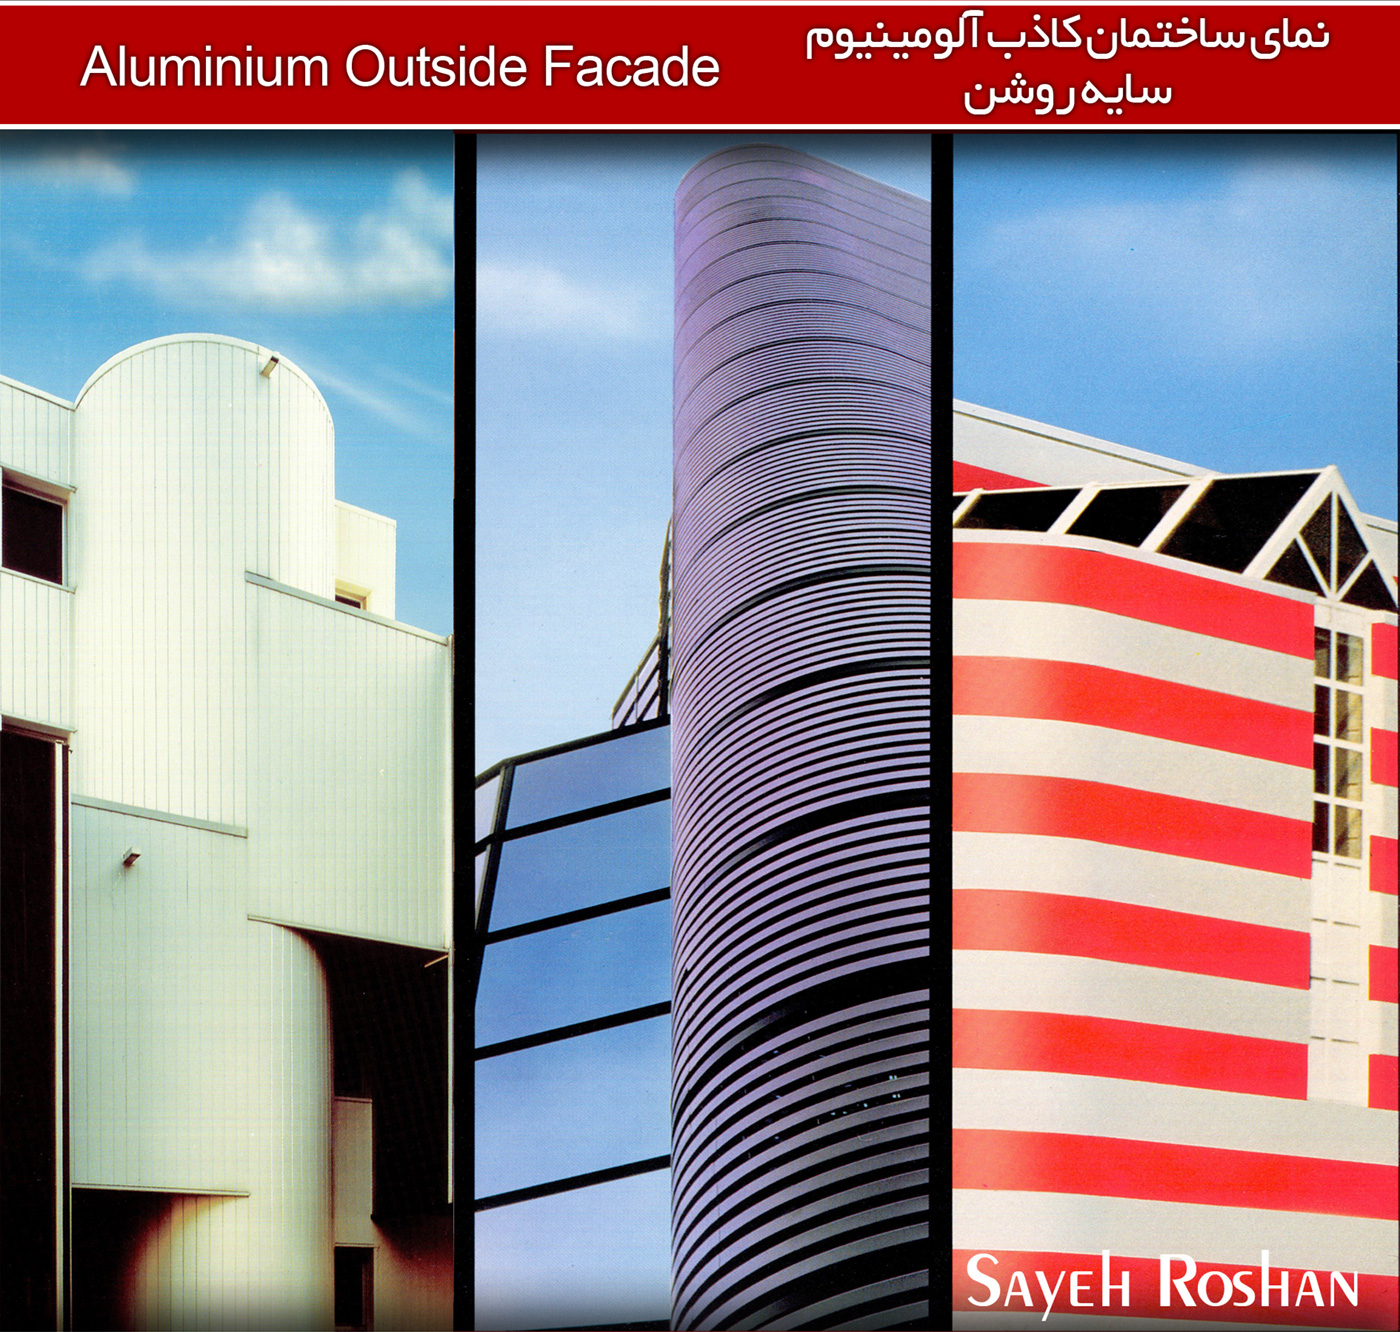 نمای ساختمان کاذب سایه روشن | Sayeh Roshan Aluminium Outside Facade